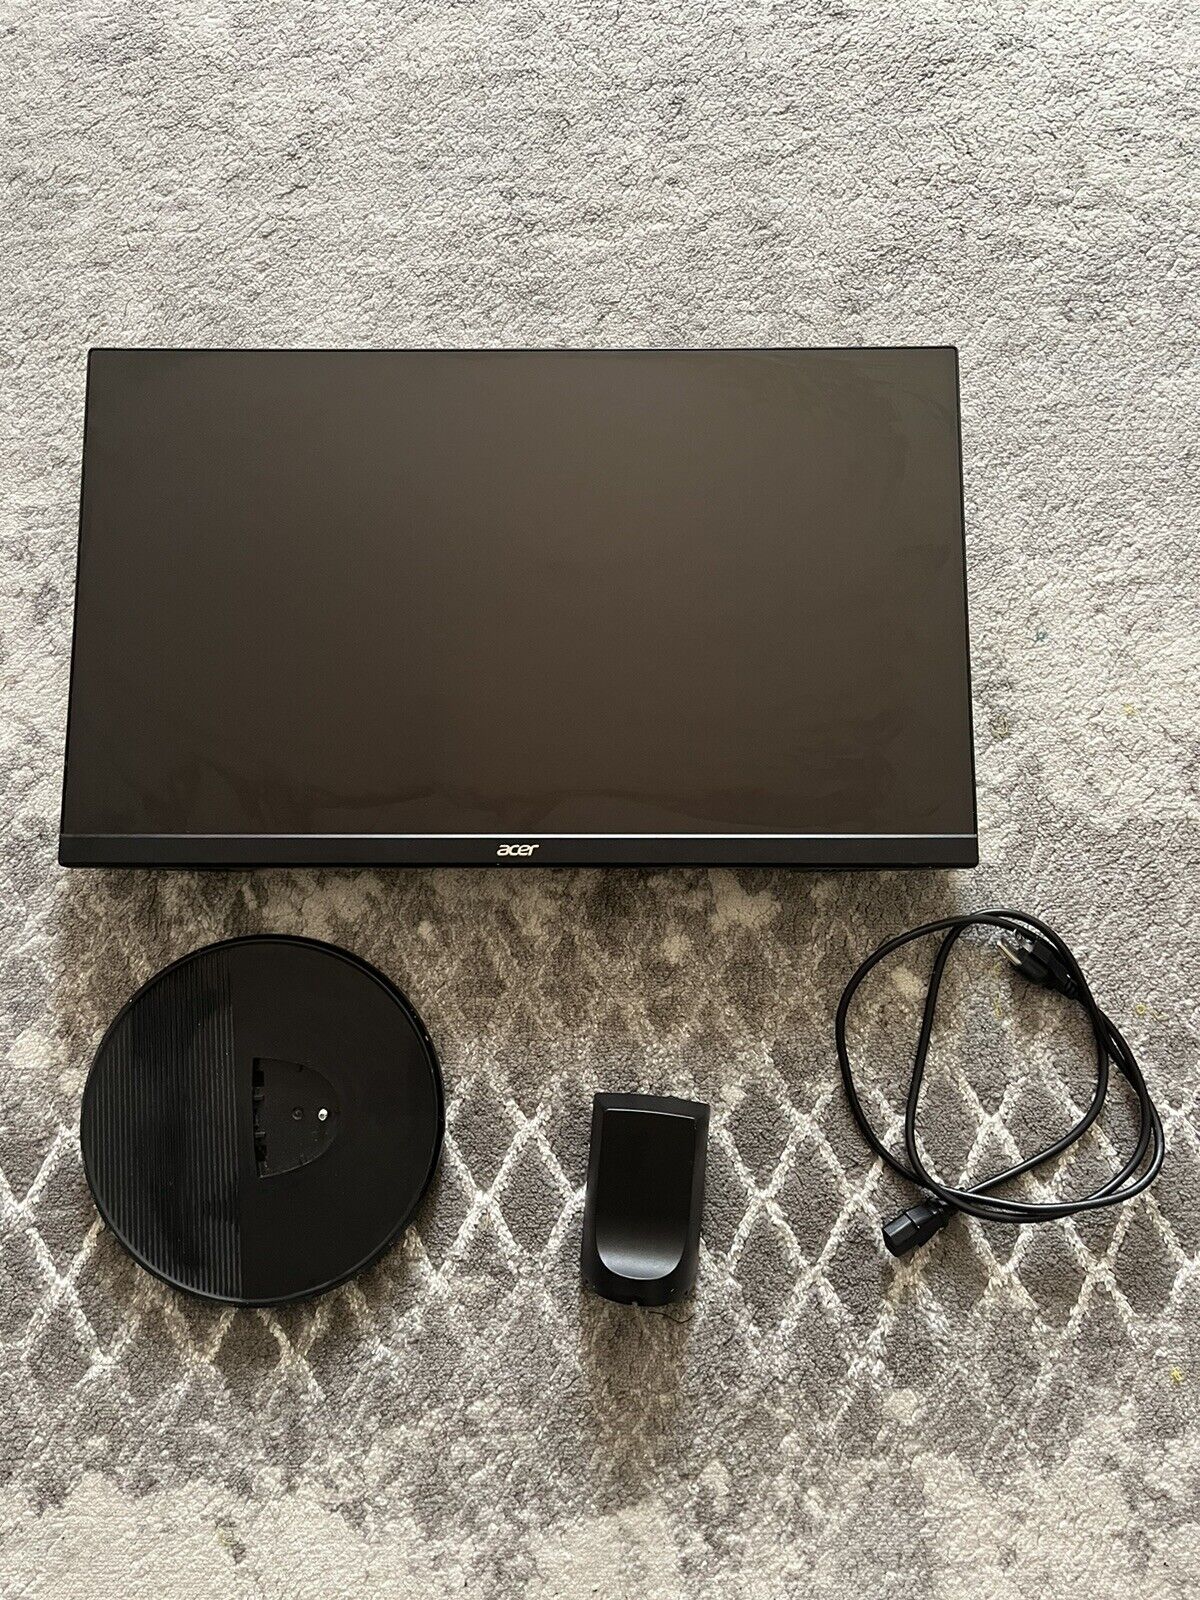 Acer KB272HL Hbi 27” Full HD Monitor - Black